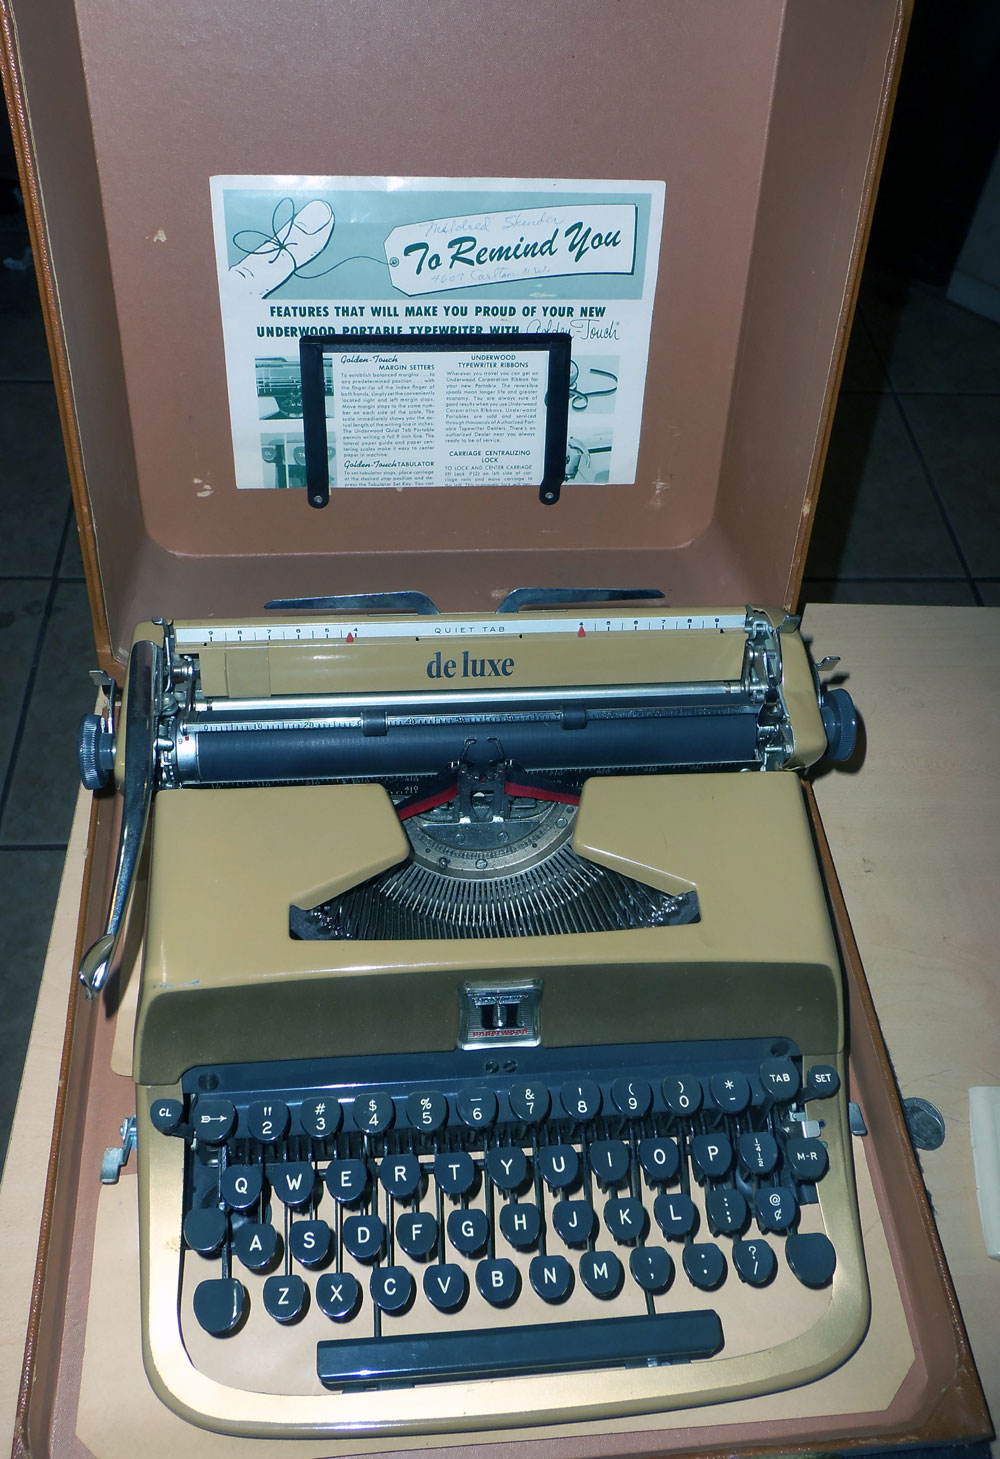 GOLDEN TOUCH Underwood universal typewriter Portable Manual Typewriter